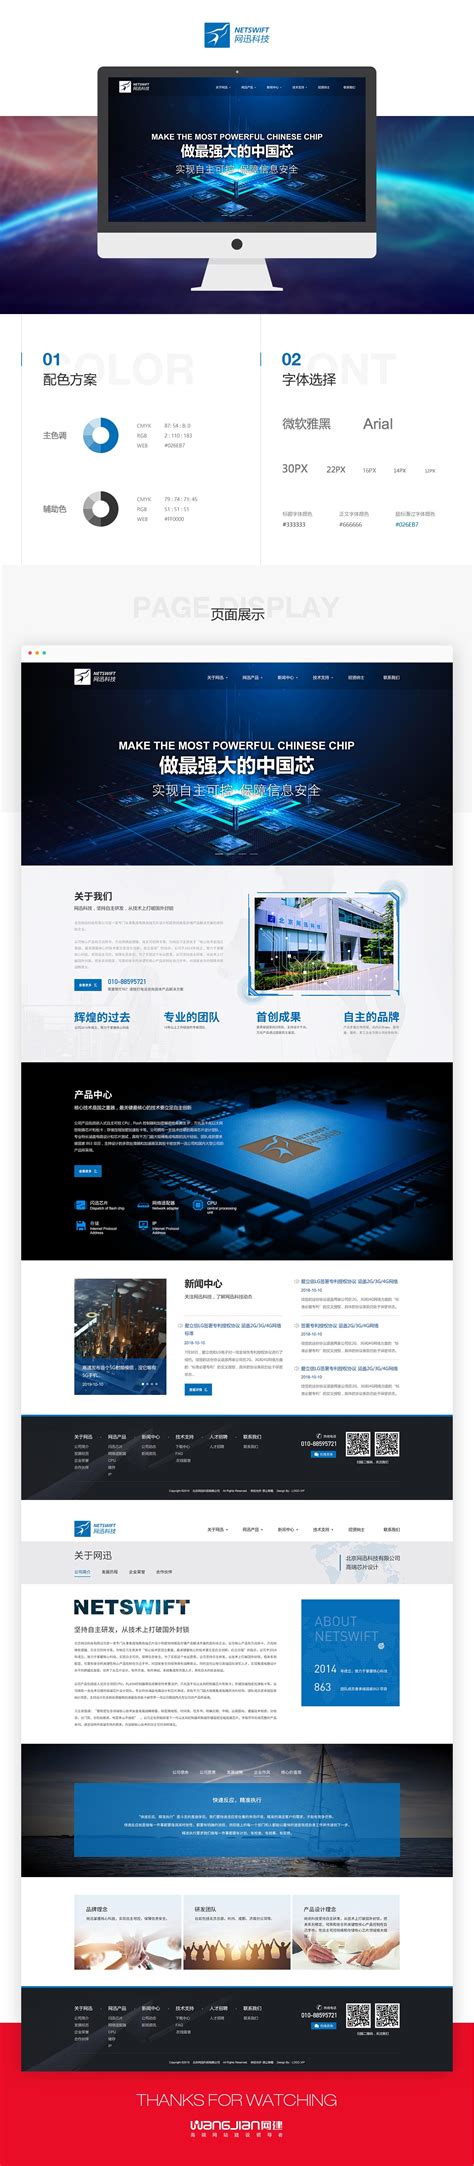 北京网站开发应该考虑哪些网页设计趋势?_北京天晴创艺企业网站建设开发设计公司